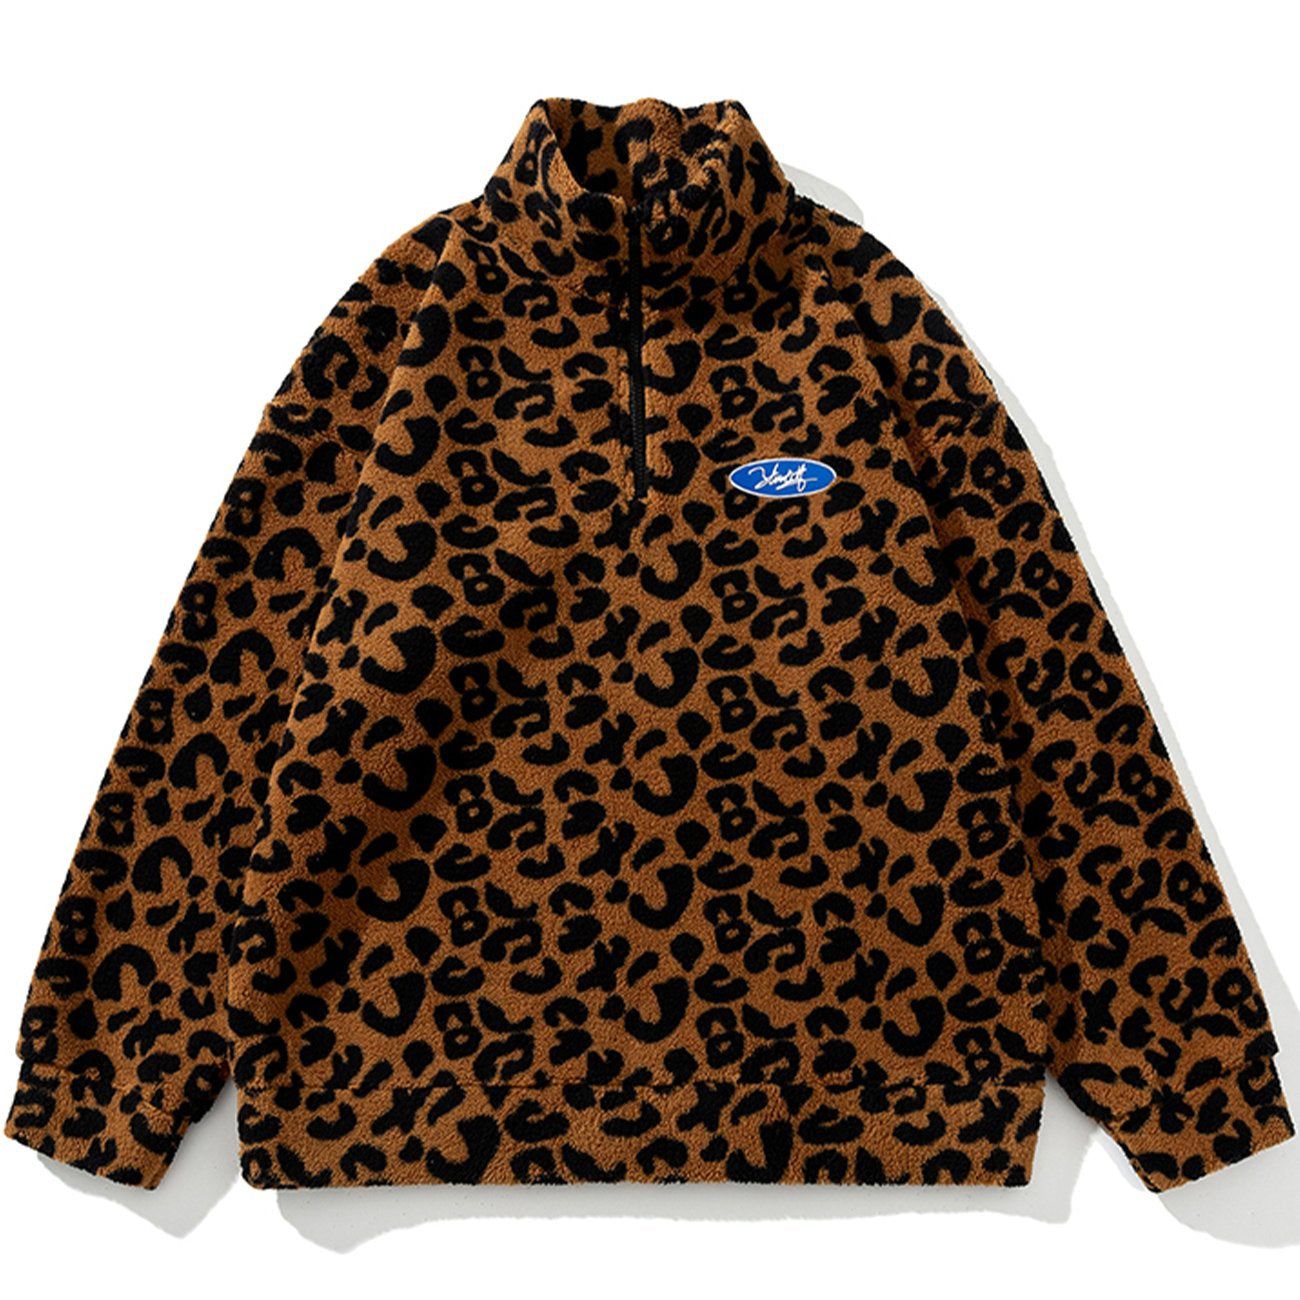 LUXENFY™ - Leopard Pattern Sherpa Winter Coat luxenfy.com